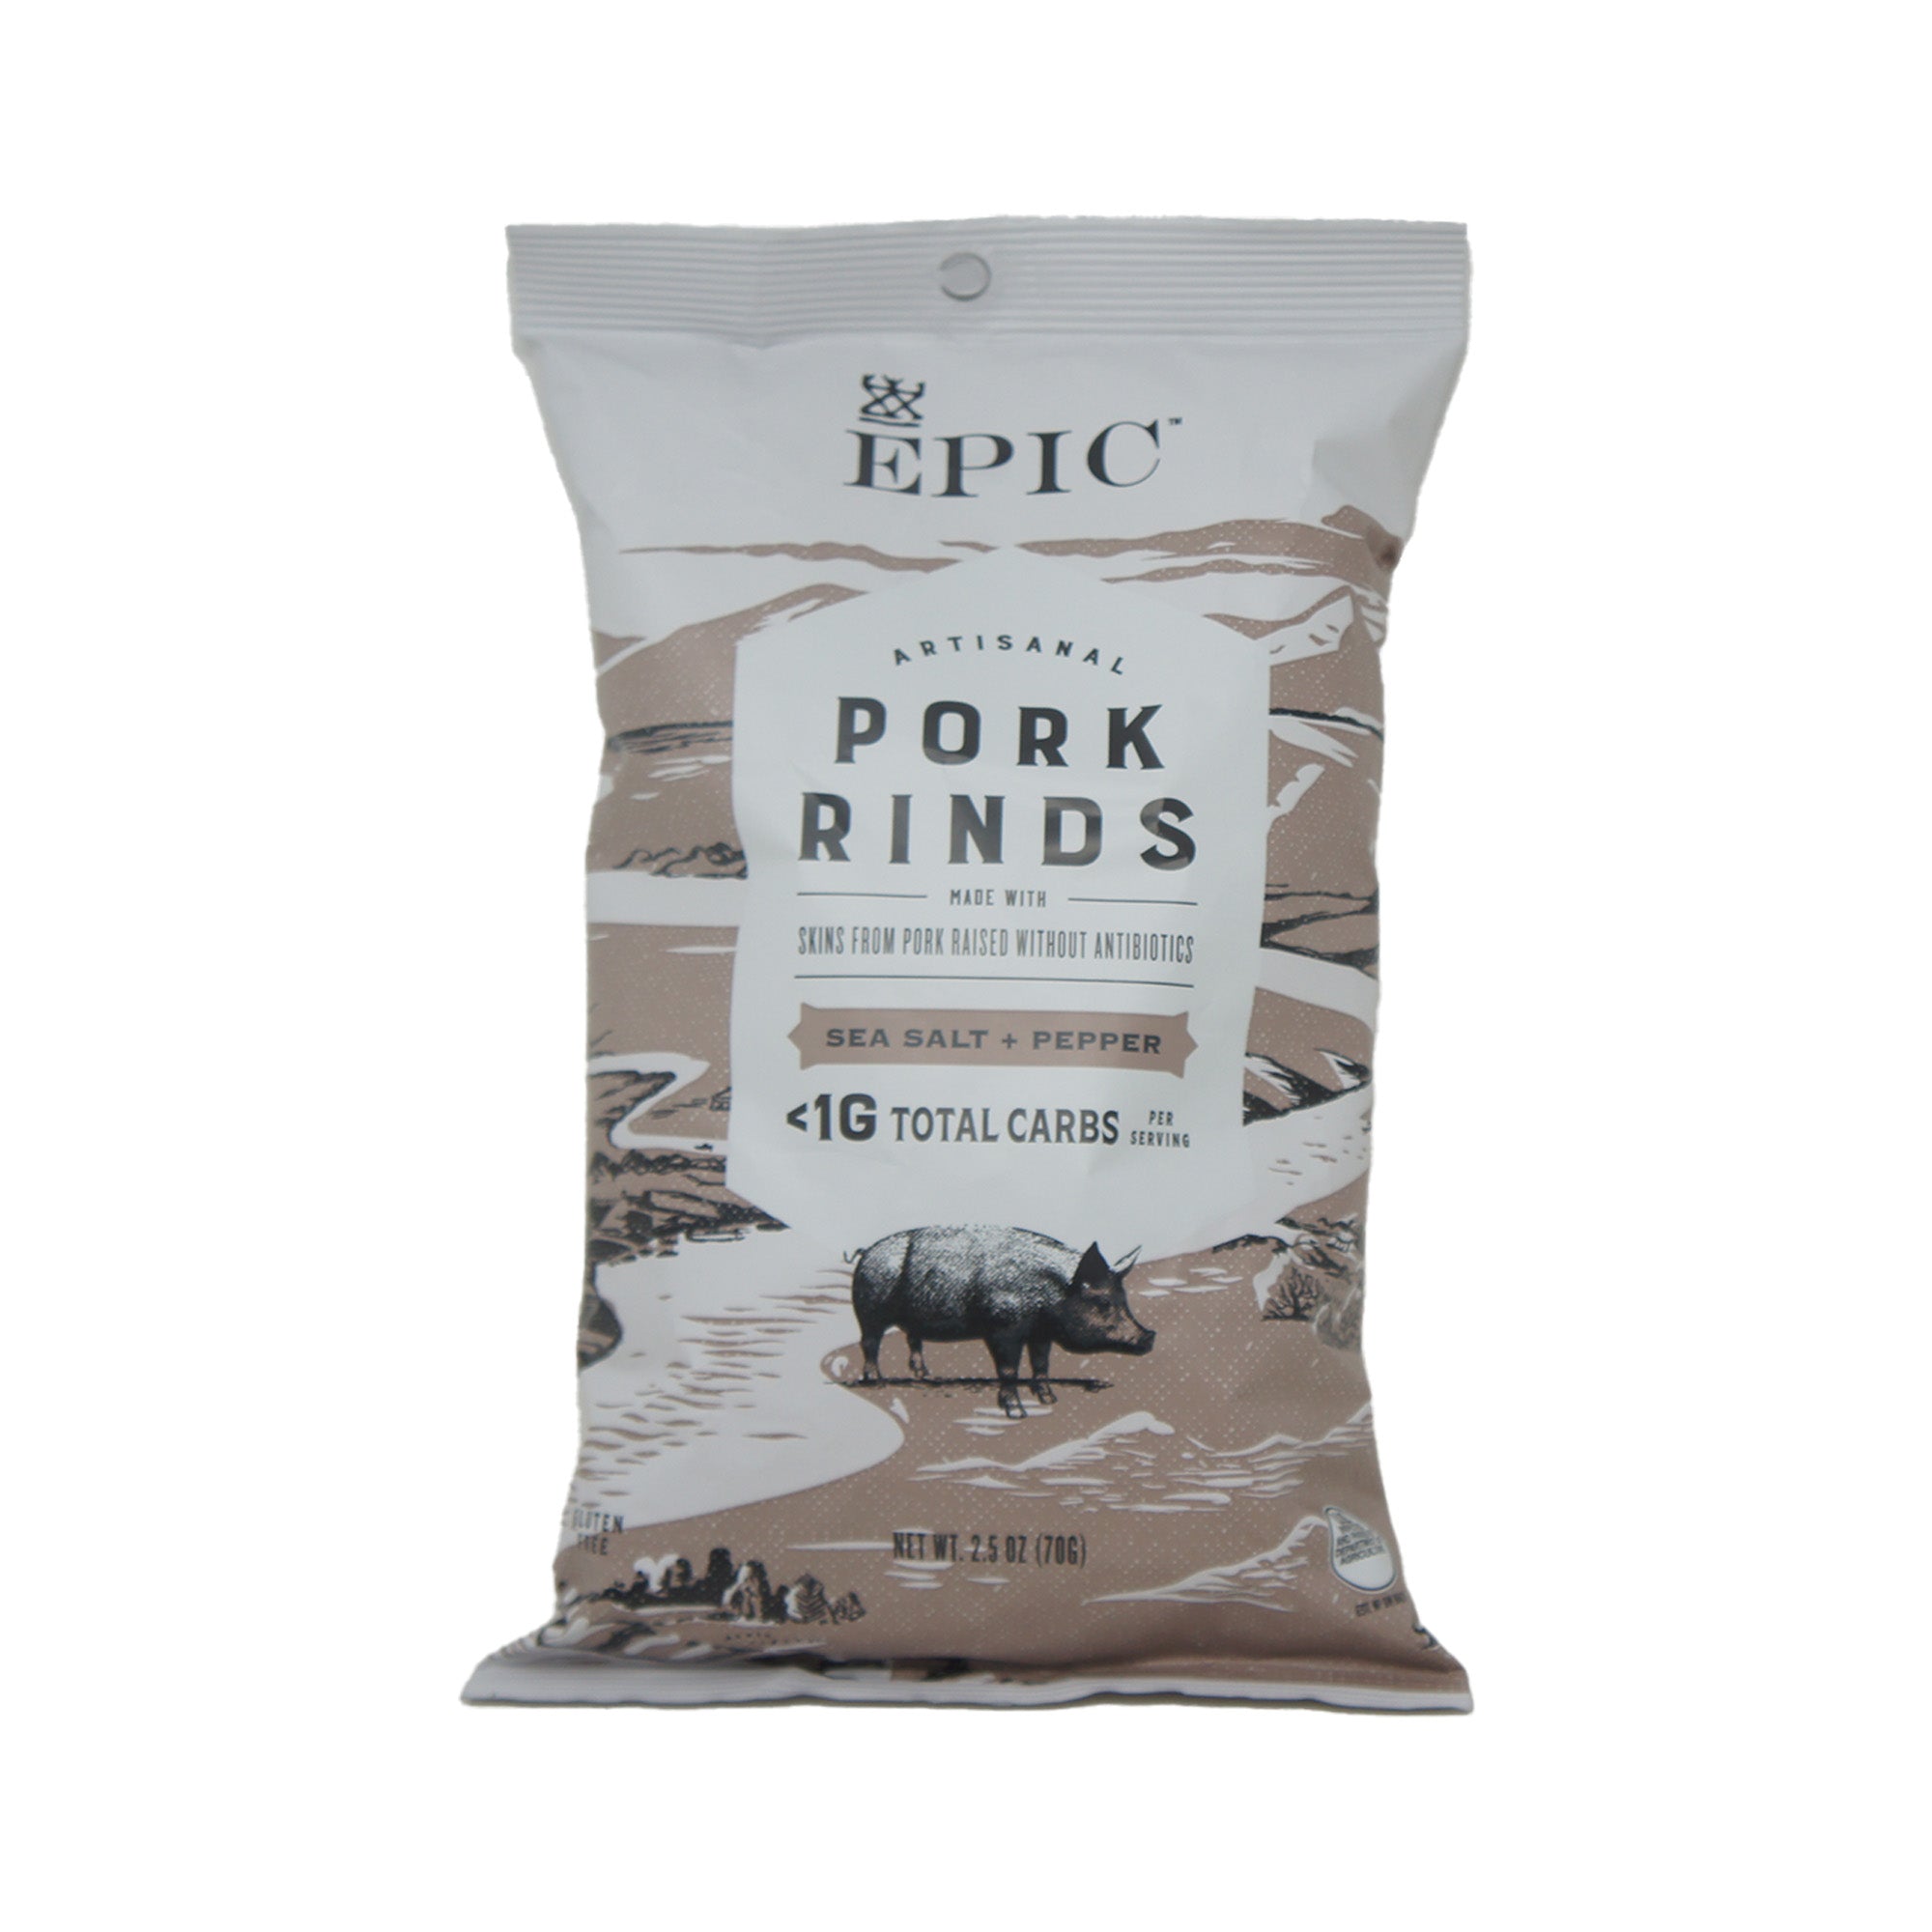 Epic, Artisanal Pork Rinds, Sea Salt and Pepper Flavor, 2.5 oz Bag